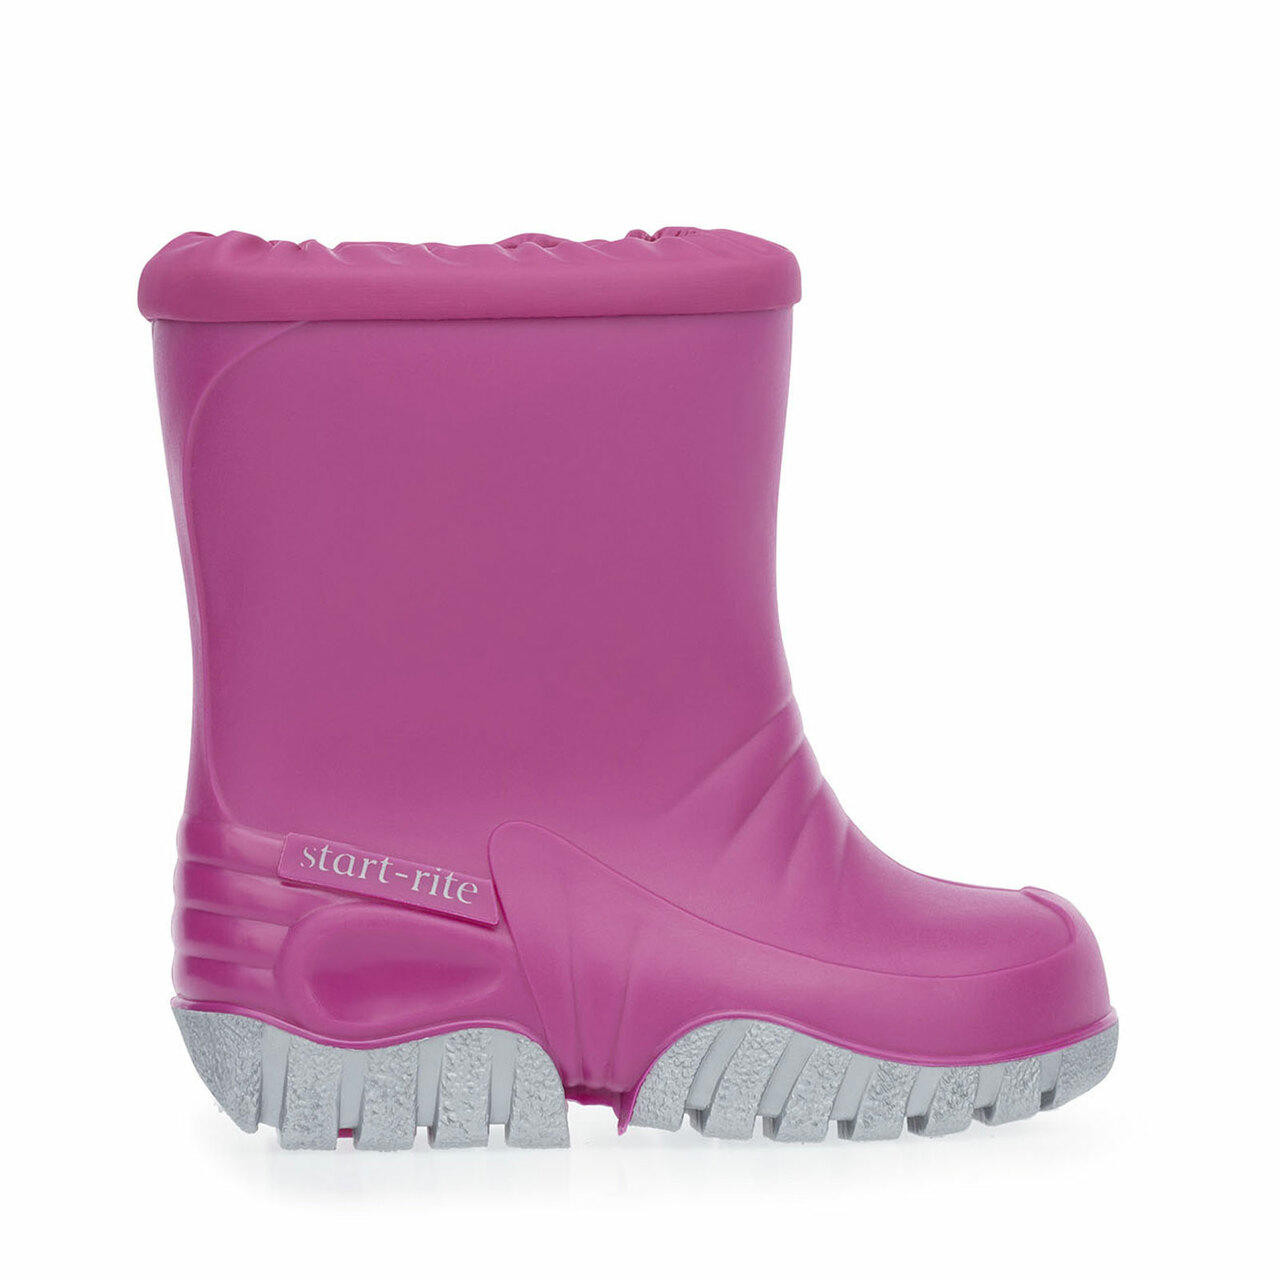 Baby Mudbuster, Pink girls slip-on waterproof wellies